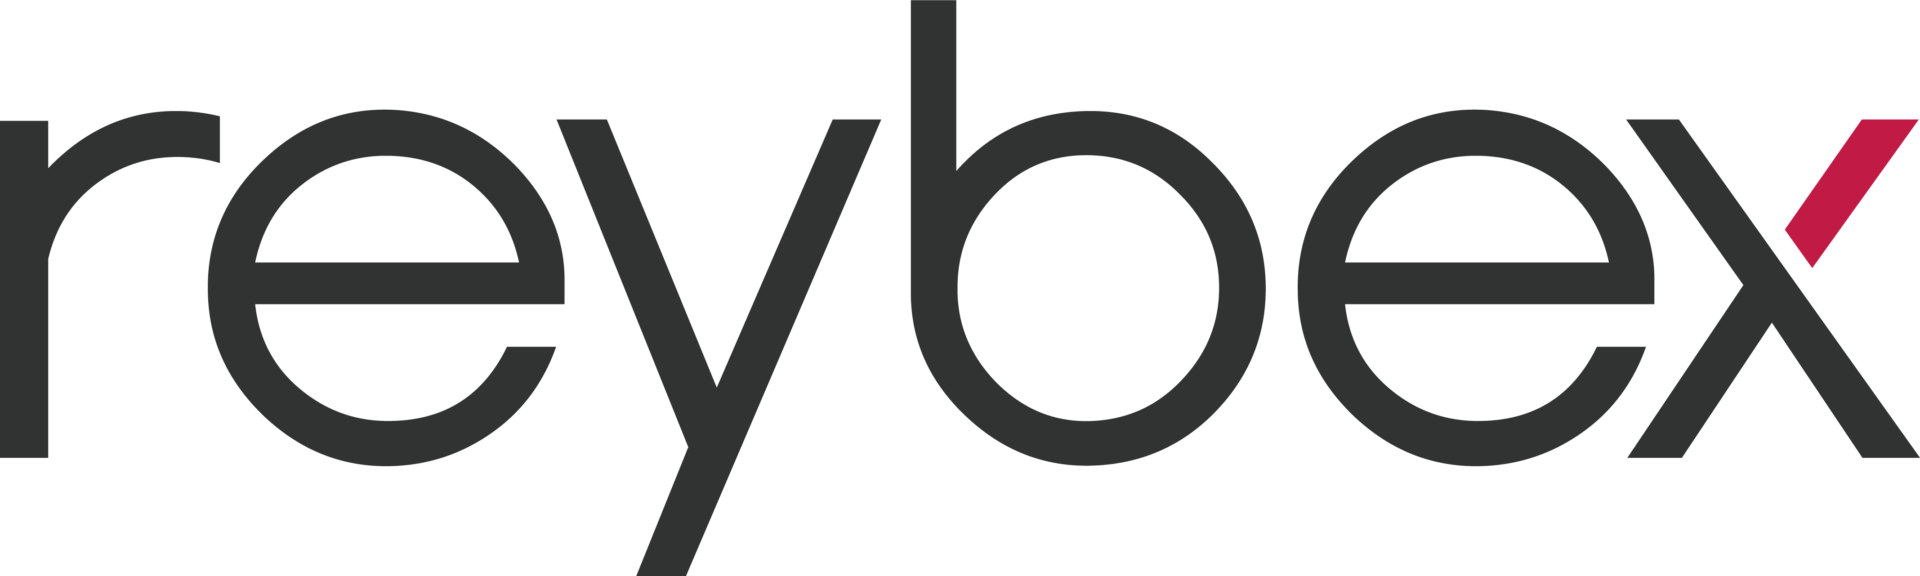 reybex Logo schwarz